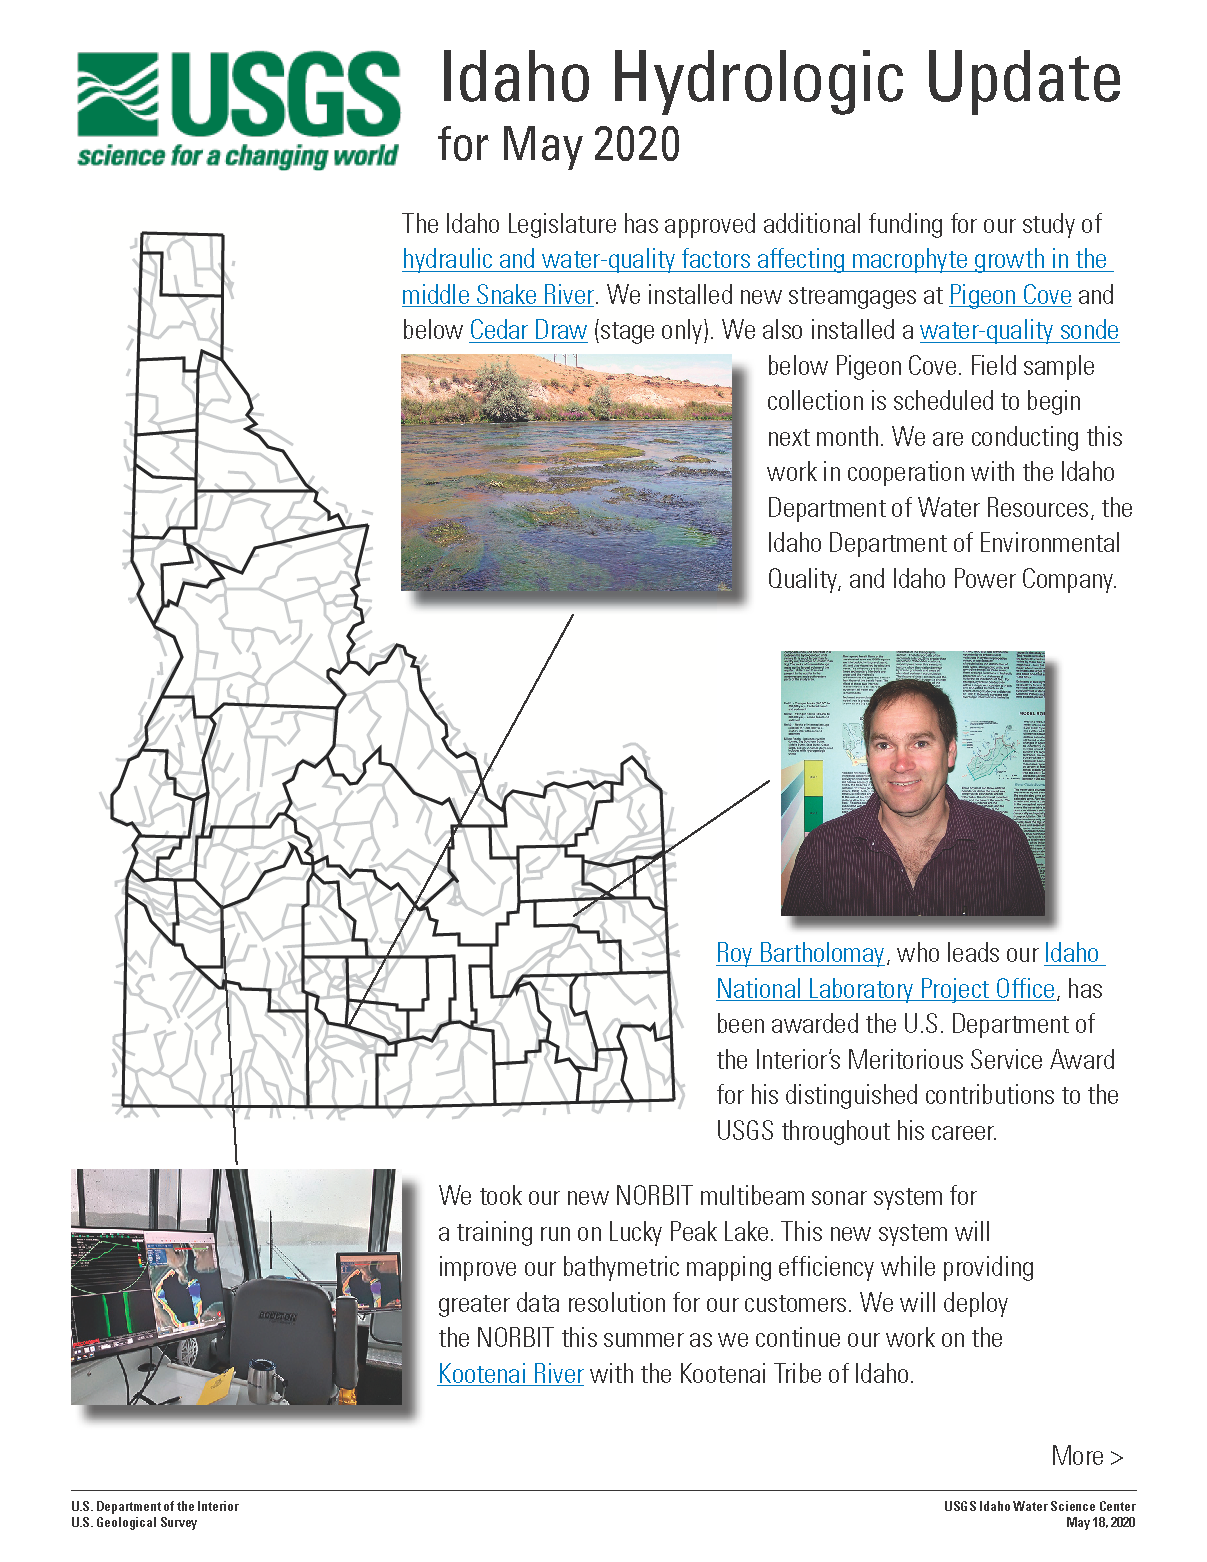 Idaho Hydrologic Update, May 2020